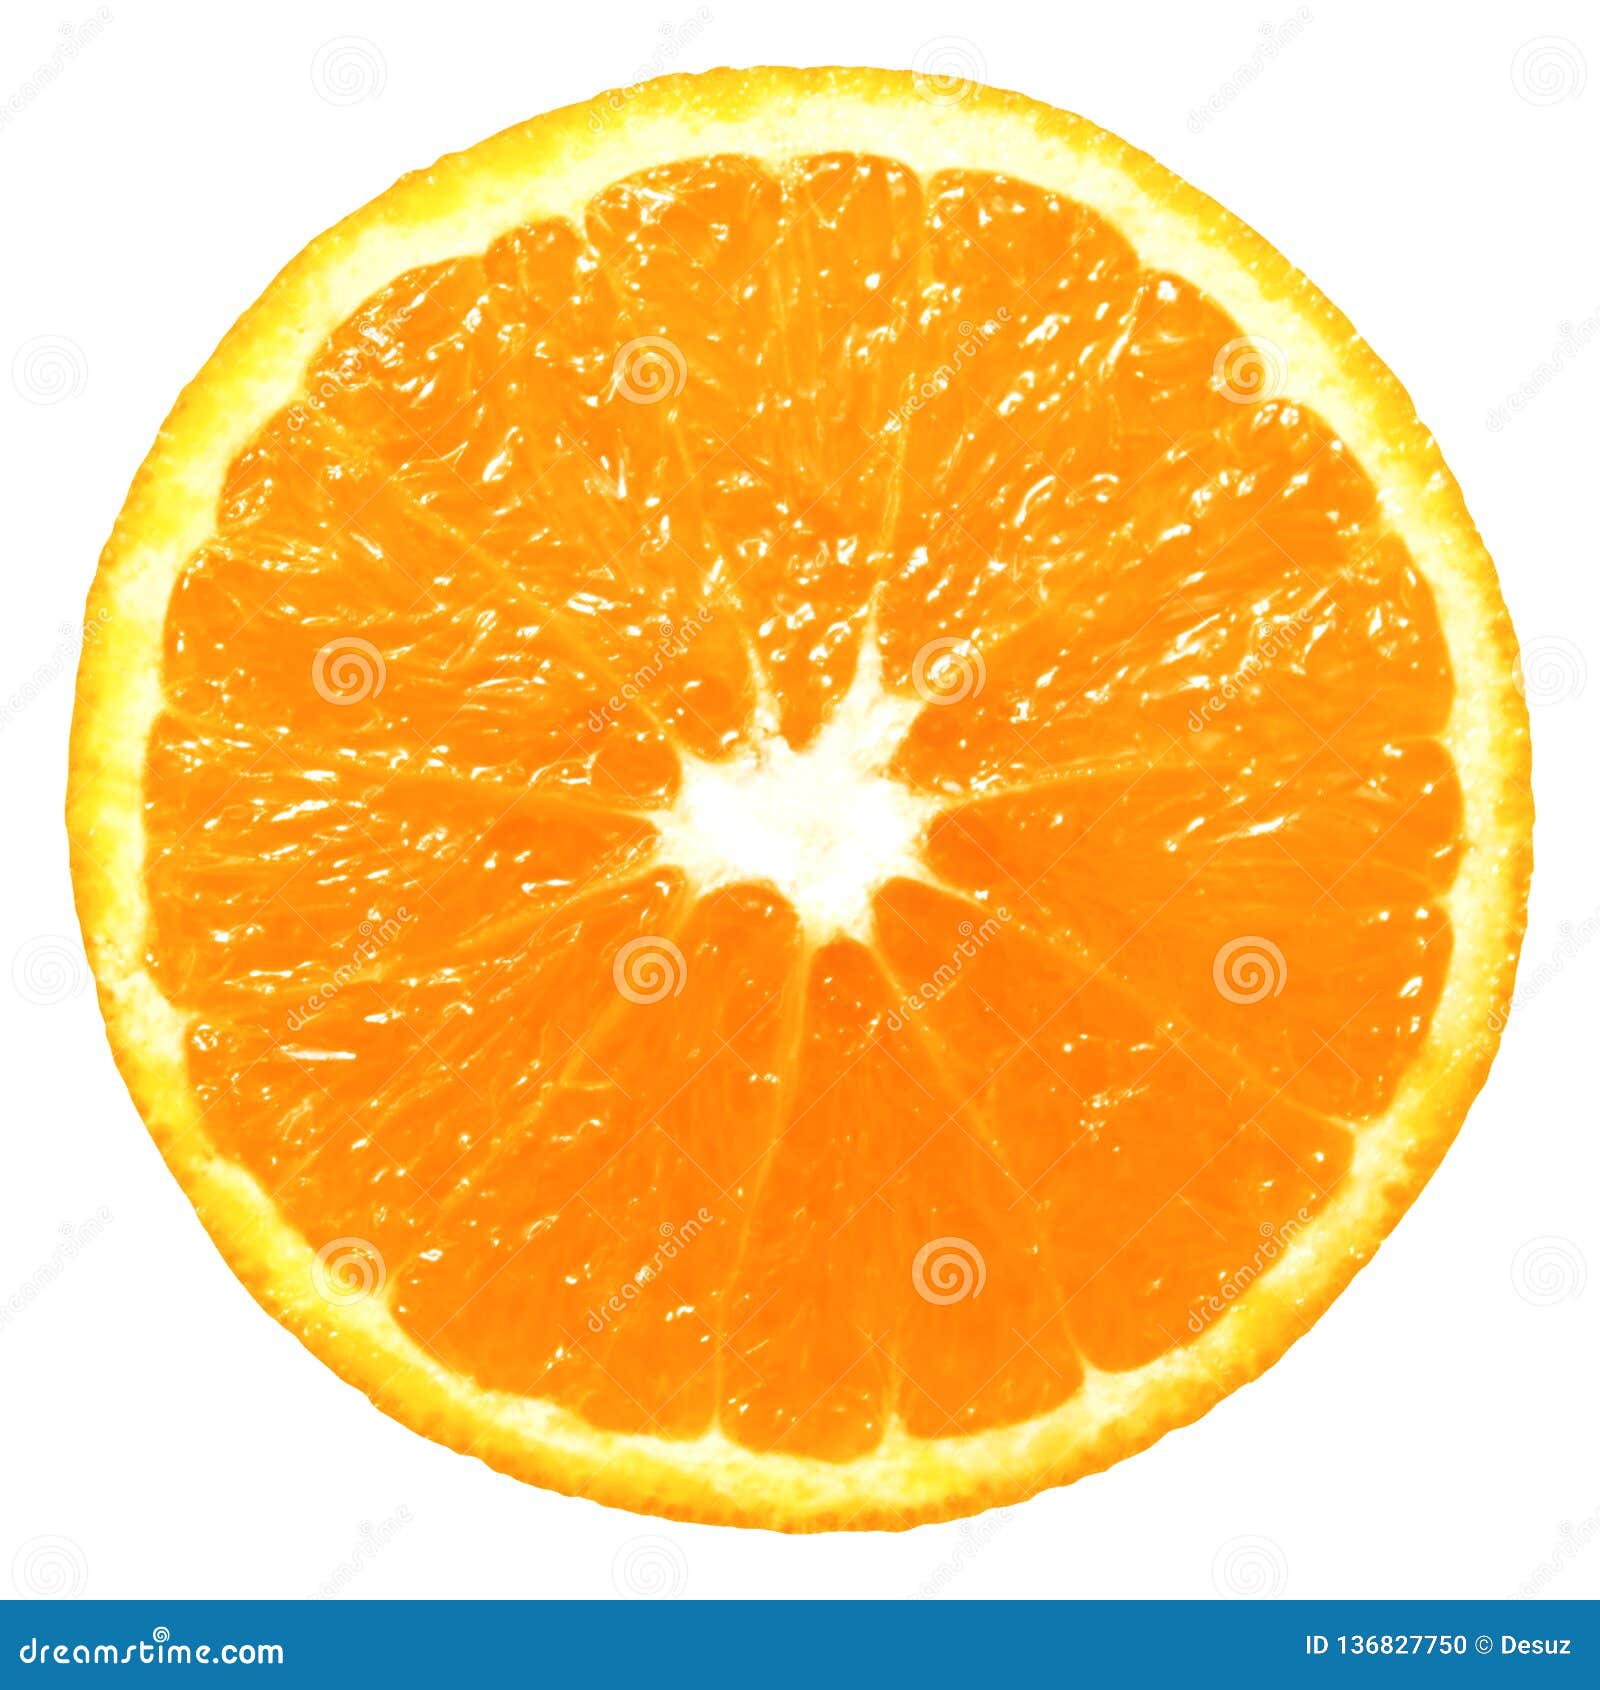 Hãy xem các bức ảnh chất lượng cao của lát cam giòn, đầy sức sống để cảm nhận hương vị tuyệt vời của trái cây này.